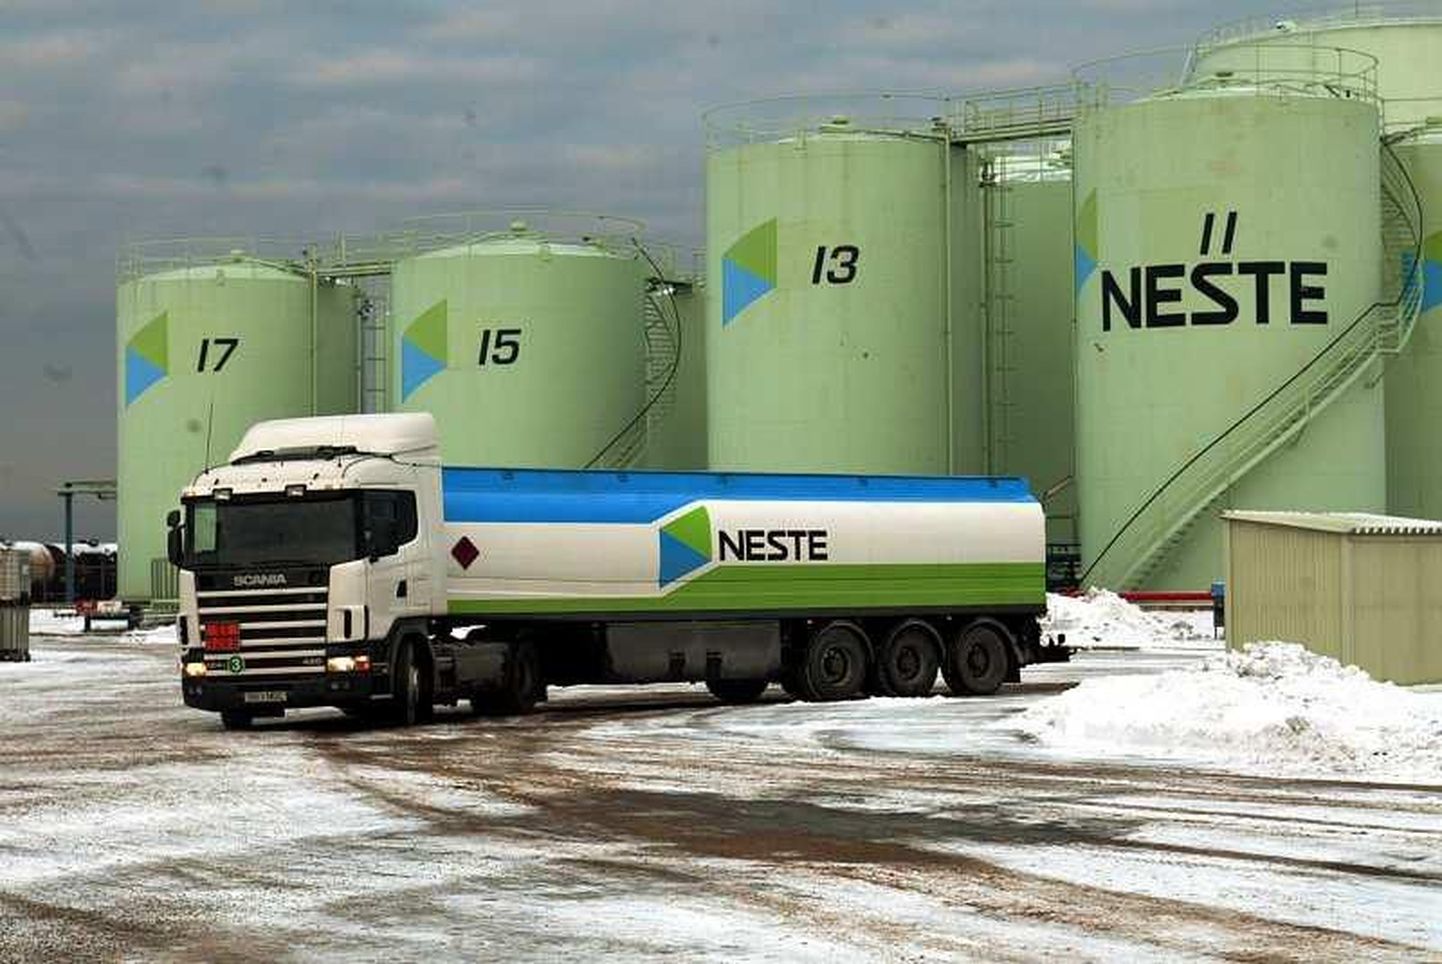 Kütuse hulgi- ja jaemüüja Neste on Eesti suurim maksumaksja.